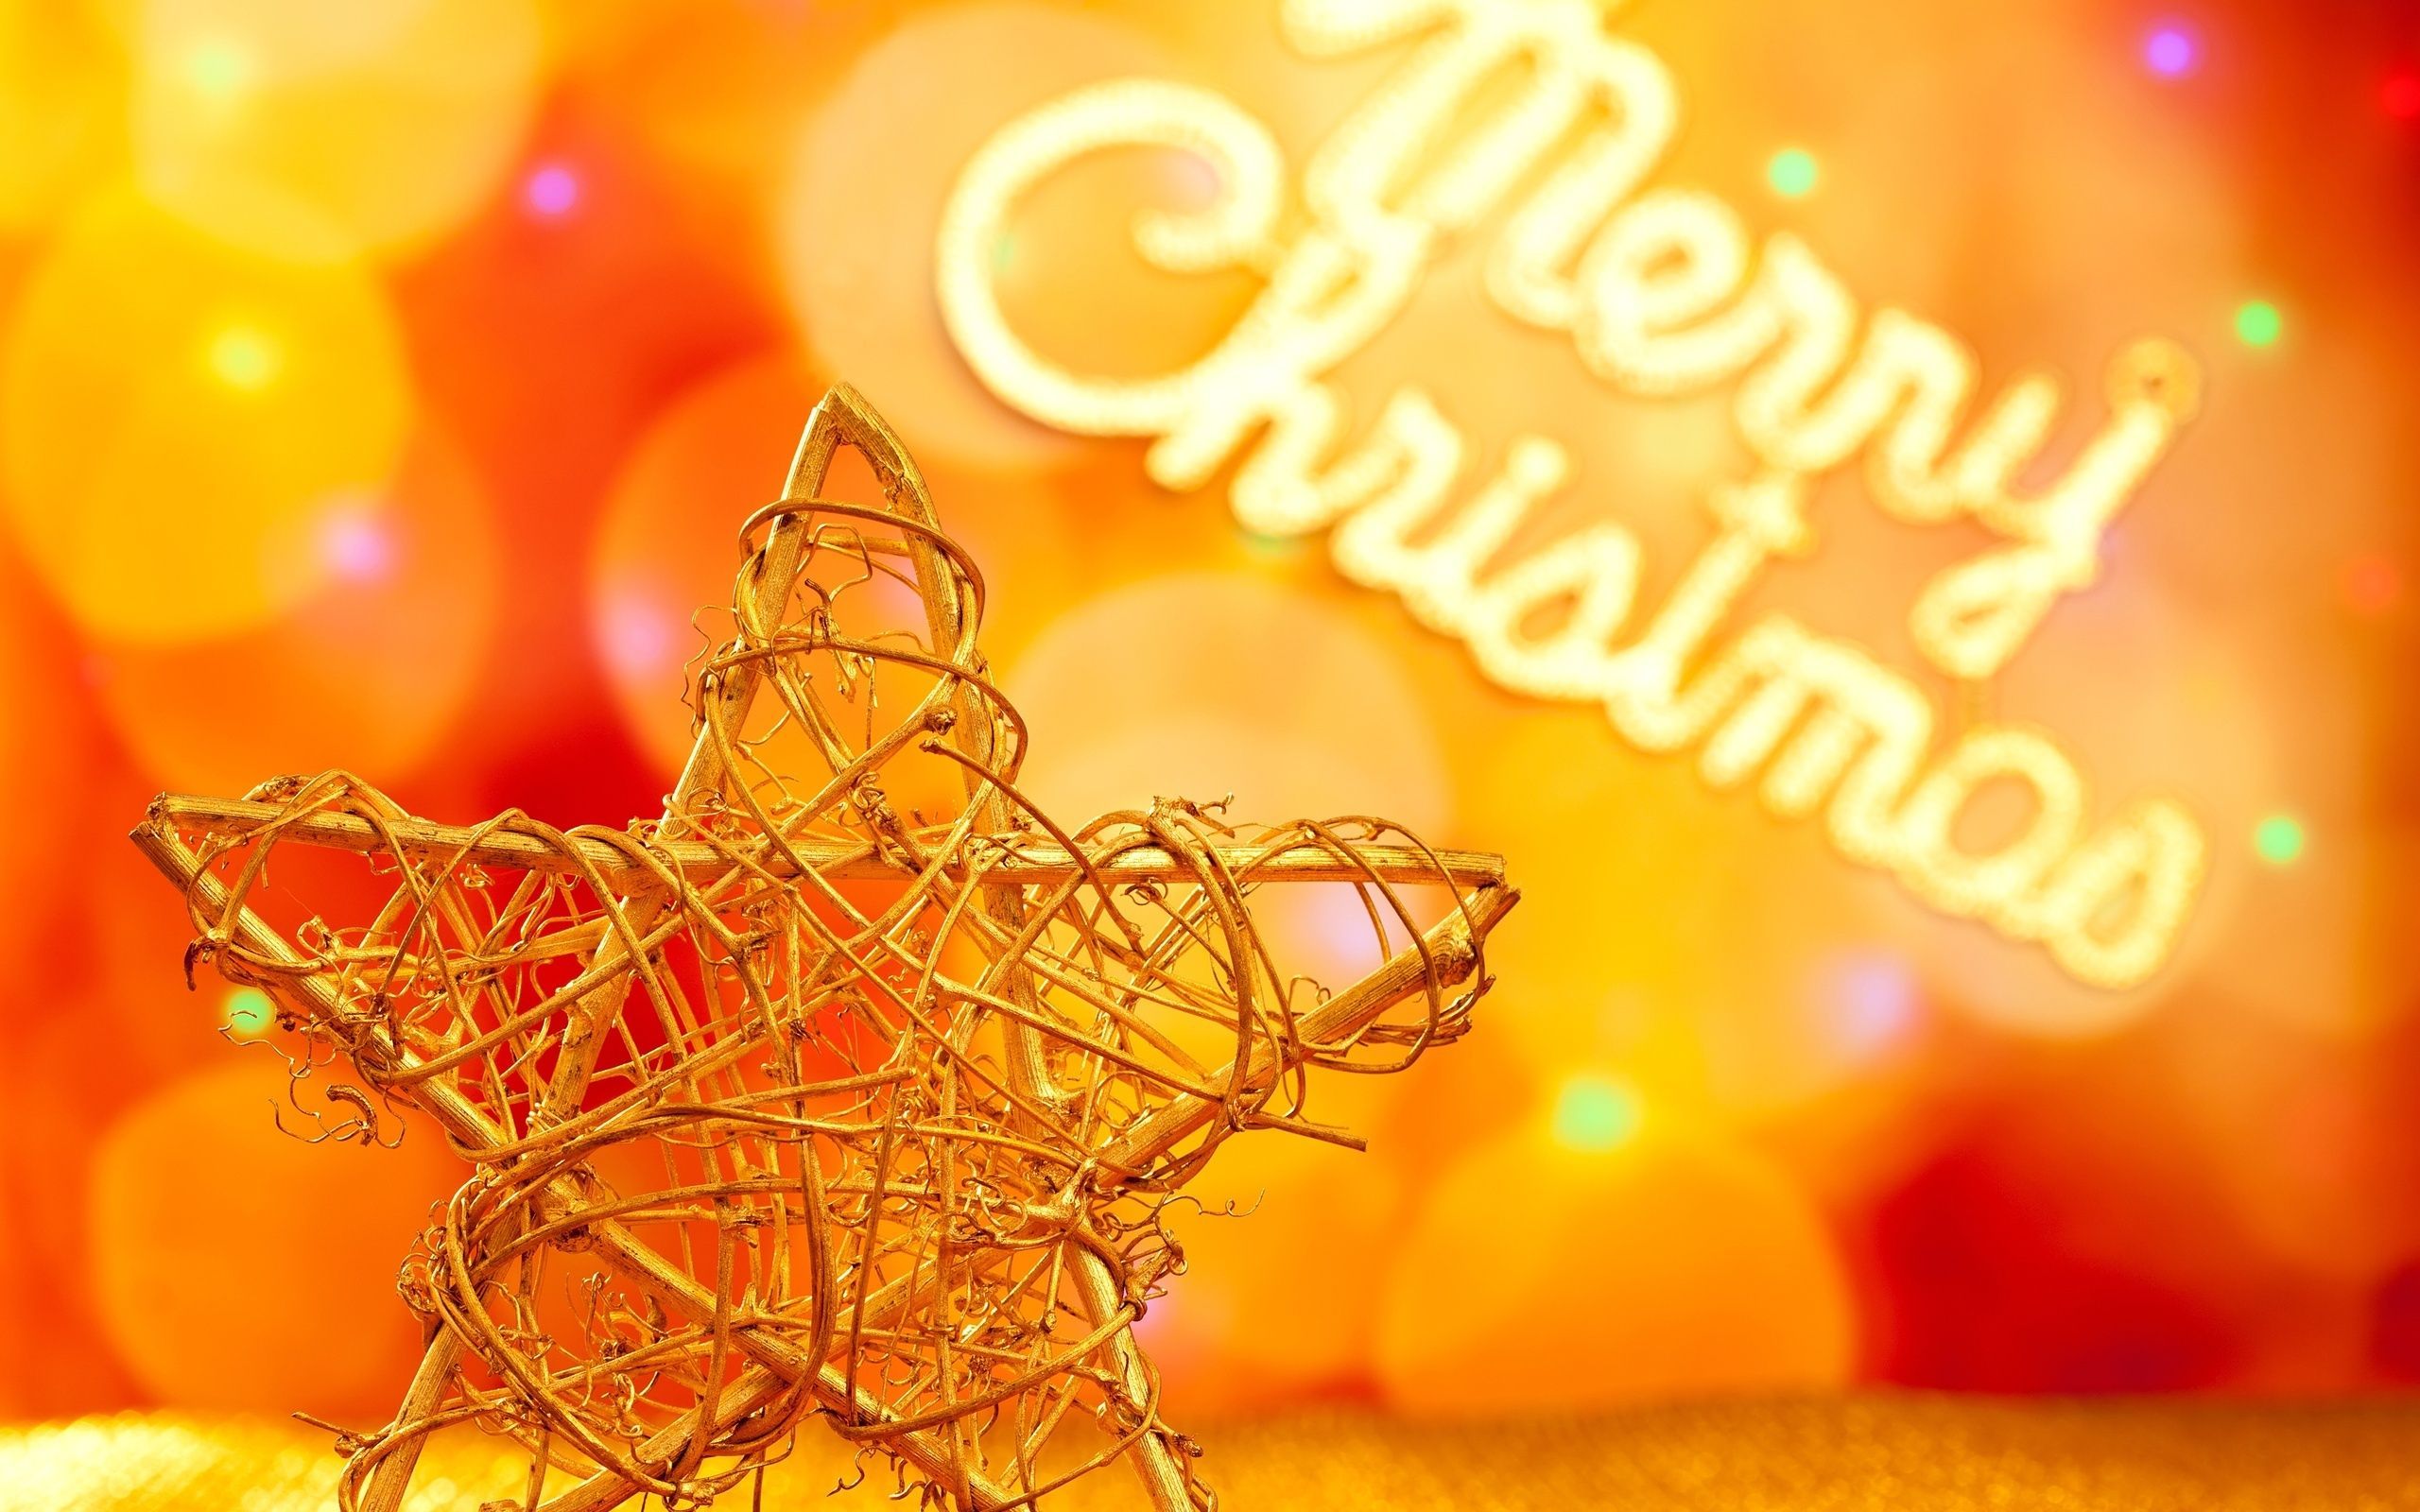 WallpaperDog là một nguồn lực tuyệt vời để tìm kiếm hình nền Giáng sinh cam đầy ấm áp để làm mới màn hình điện thoại hoặc máy tính của bạn. Bạn sẽ tìm thấy hàng nghìn bức ảnh đẹp như tranh, đầy cảm hứng và độc đáo để giúp bạn mang mùa Giáng sinh vào thế giới sống của mình.